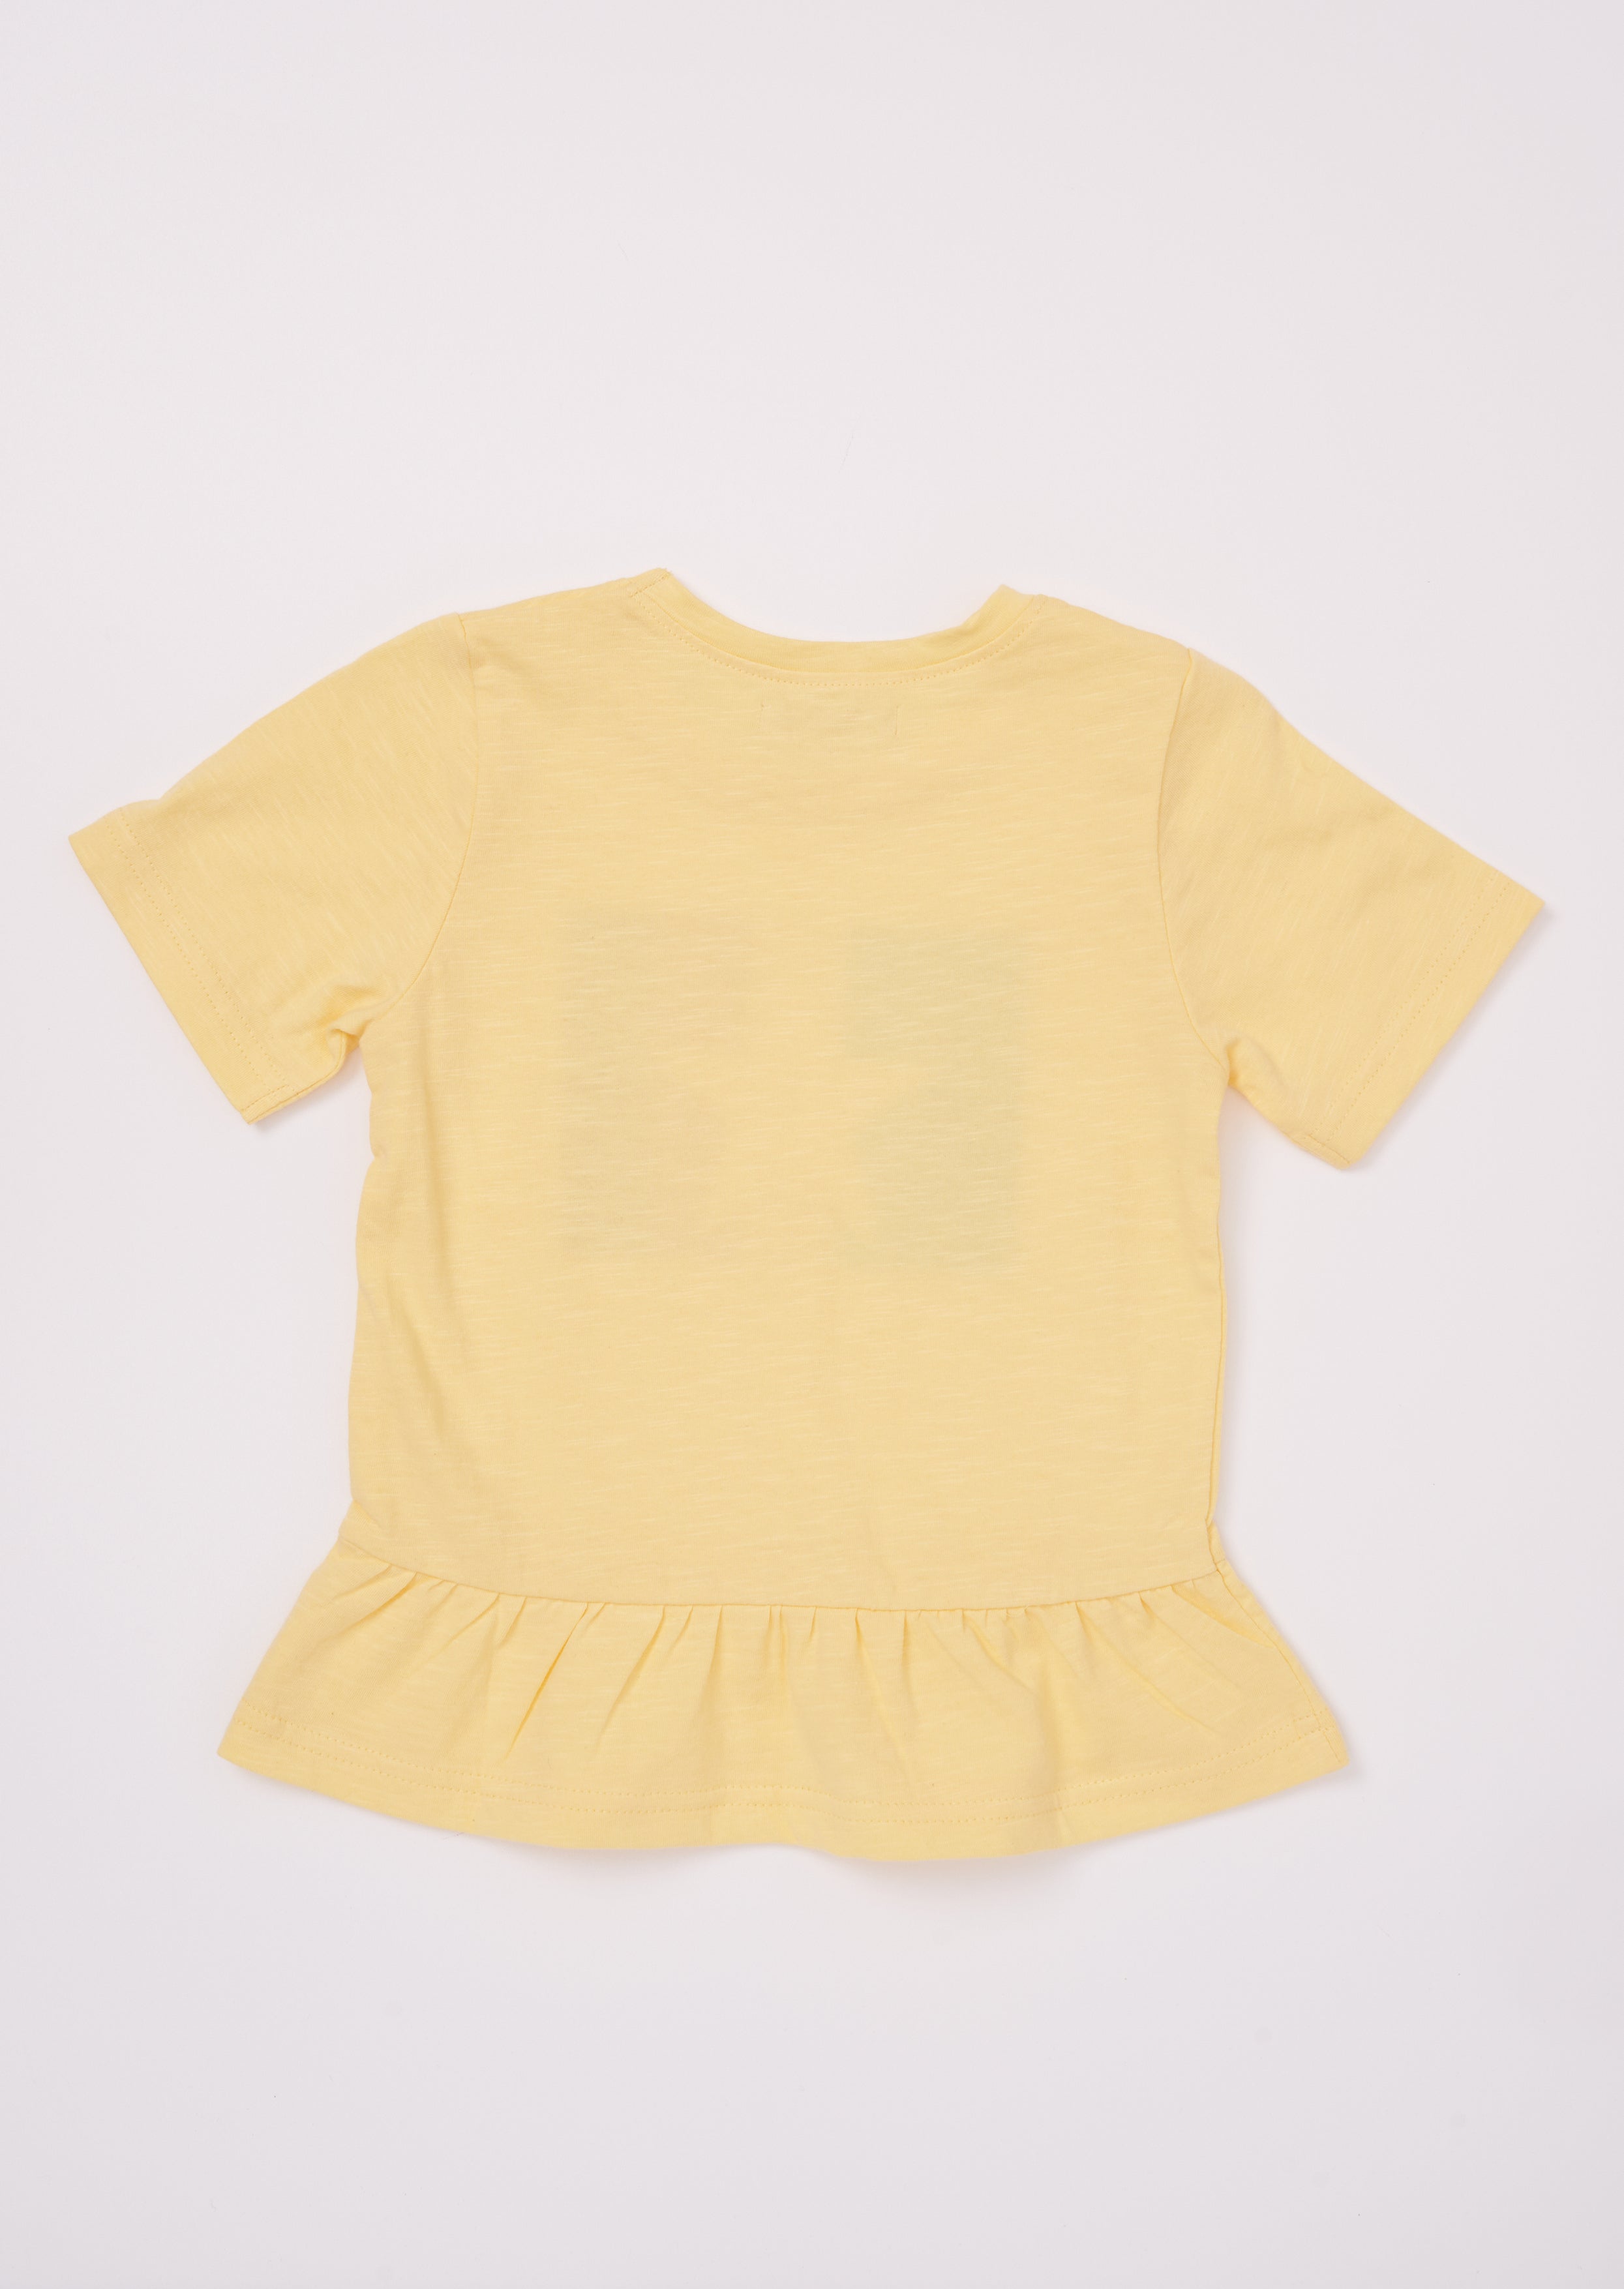 Girls Star Printed Yellow T-Shirt